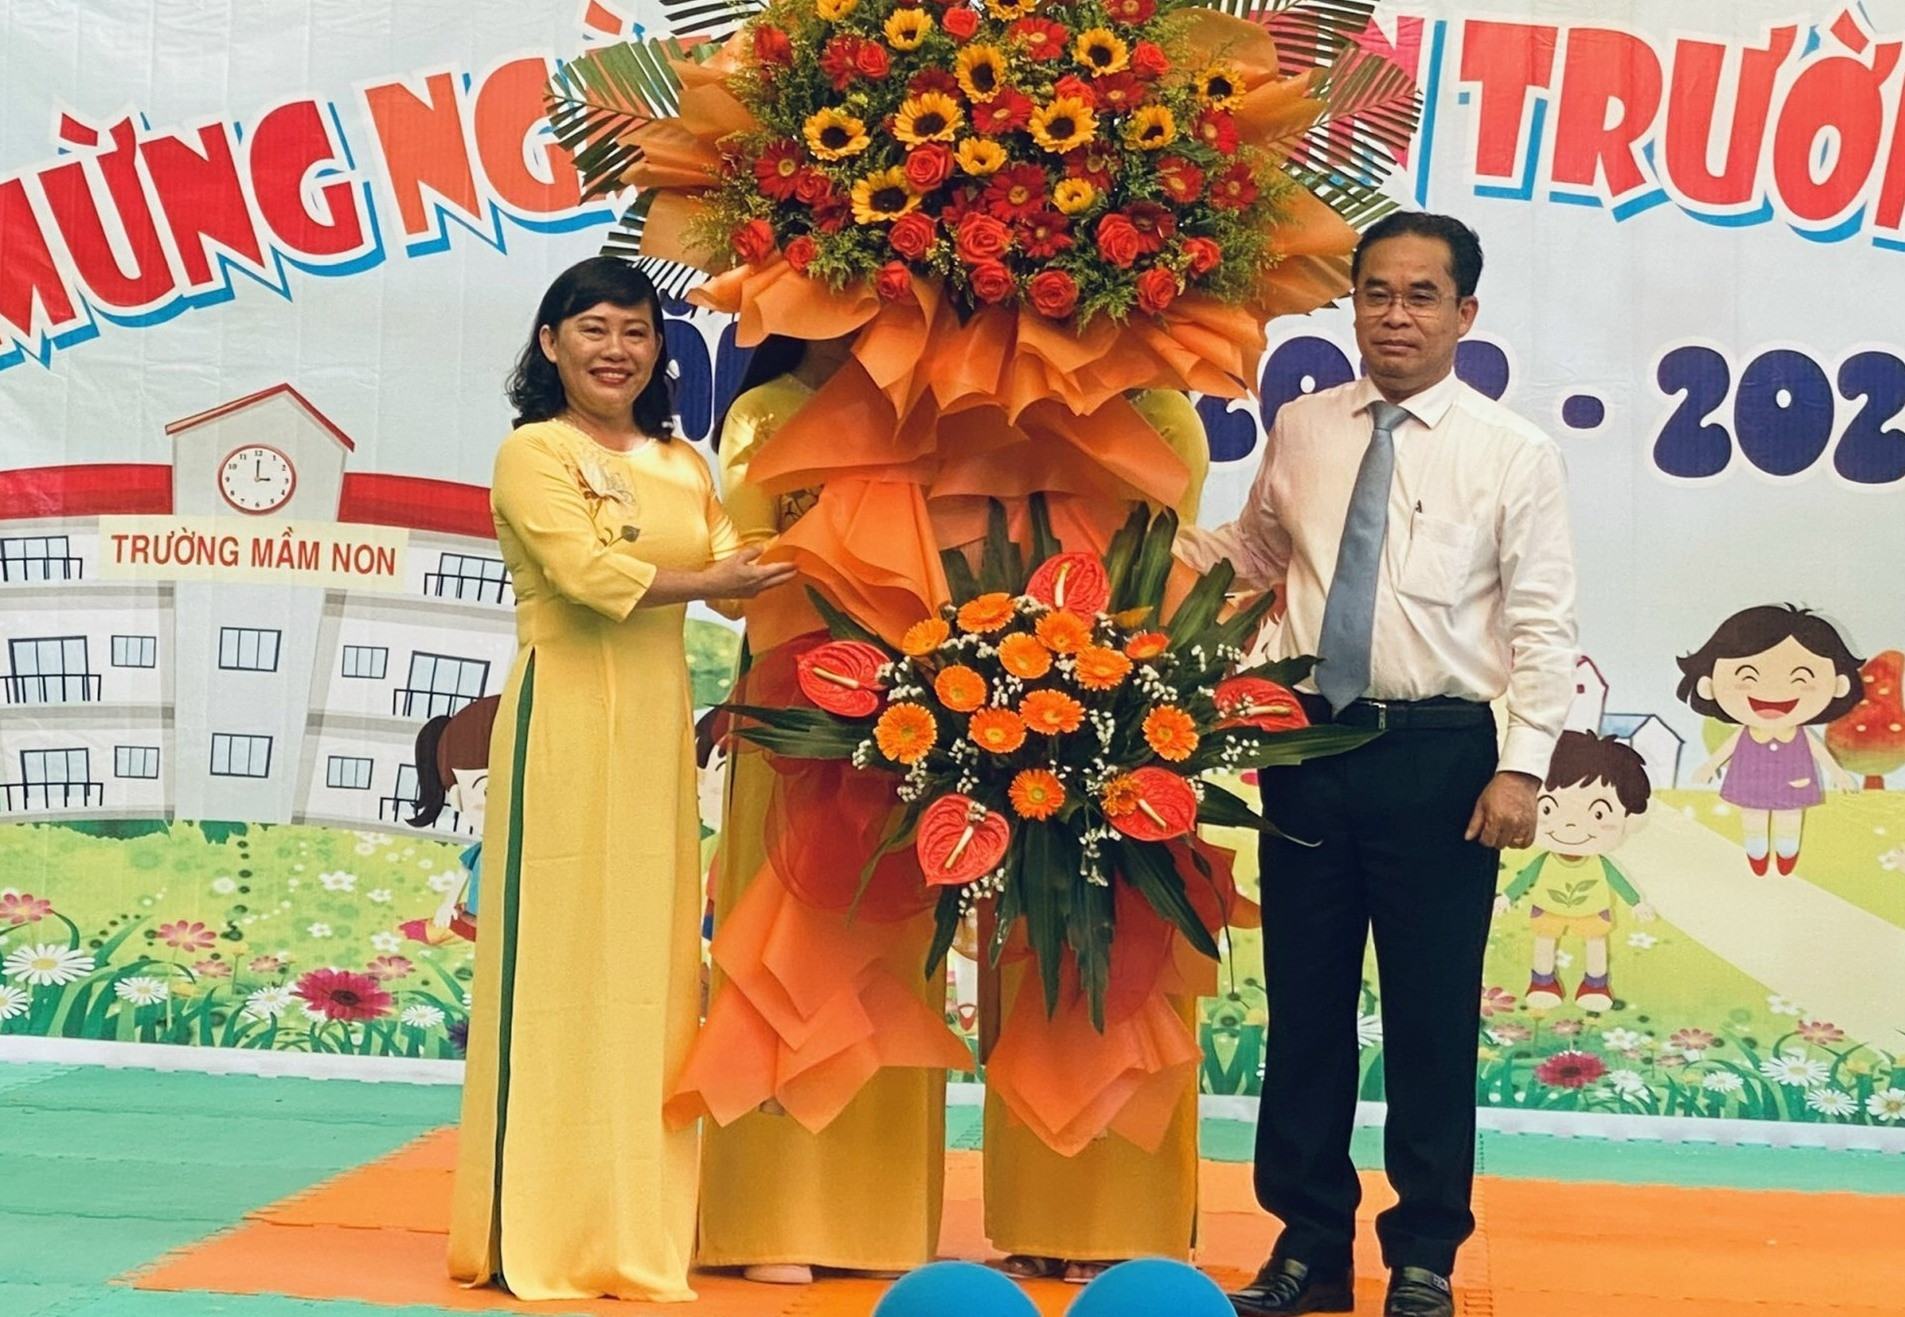 Phó Chủ tịch UBND tỉnh Trần Anh Tuấn tặng hoa chúc mừng tại Trường Mẫu giáo Măng Non (phường Minh An, TP.Hội An)